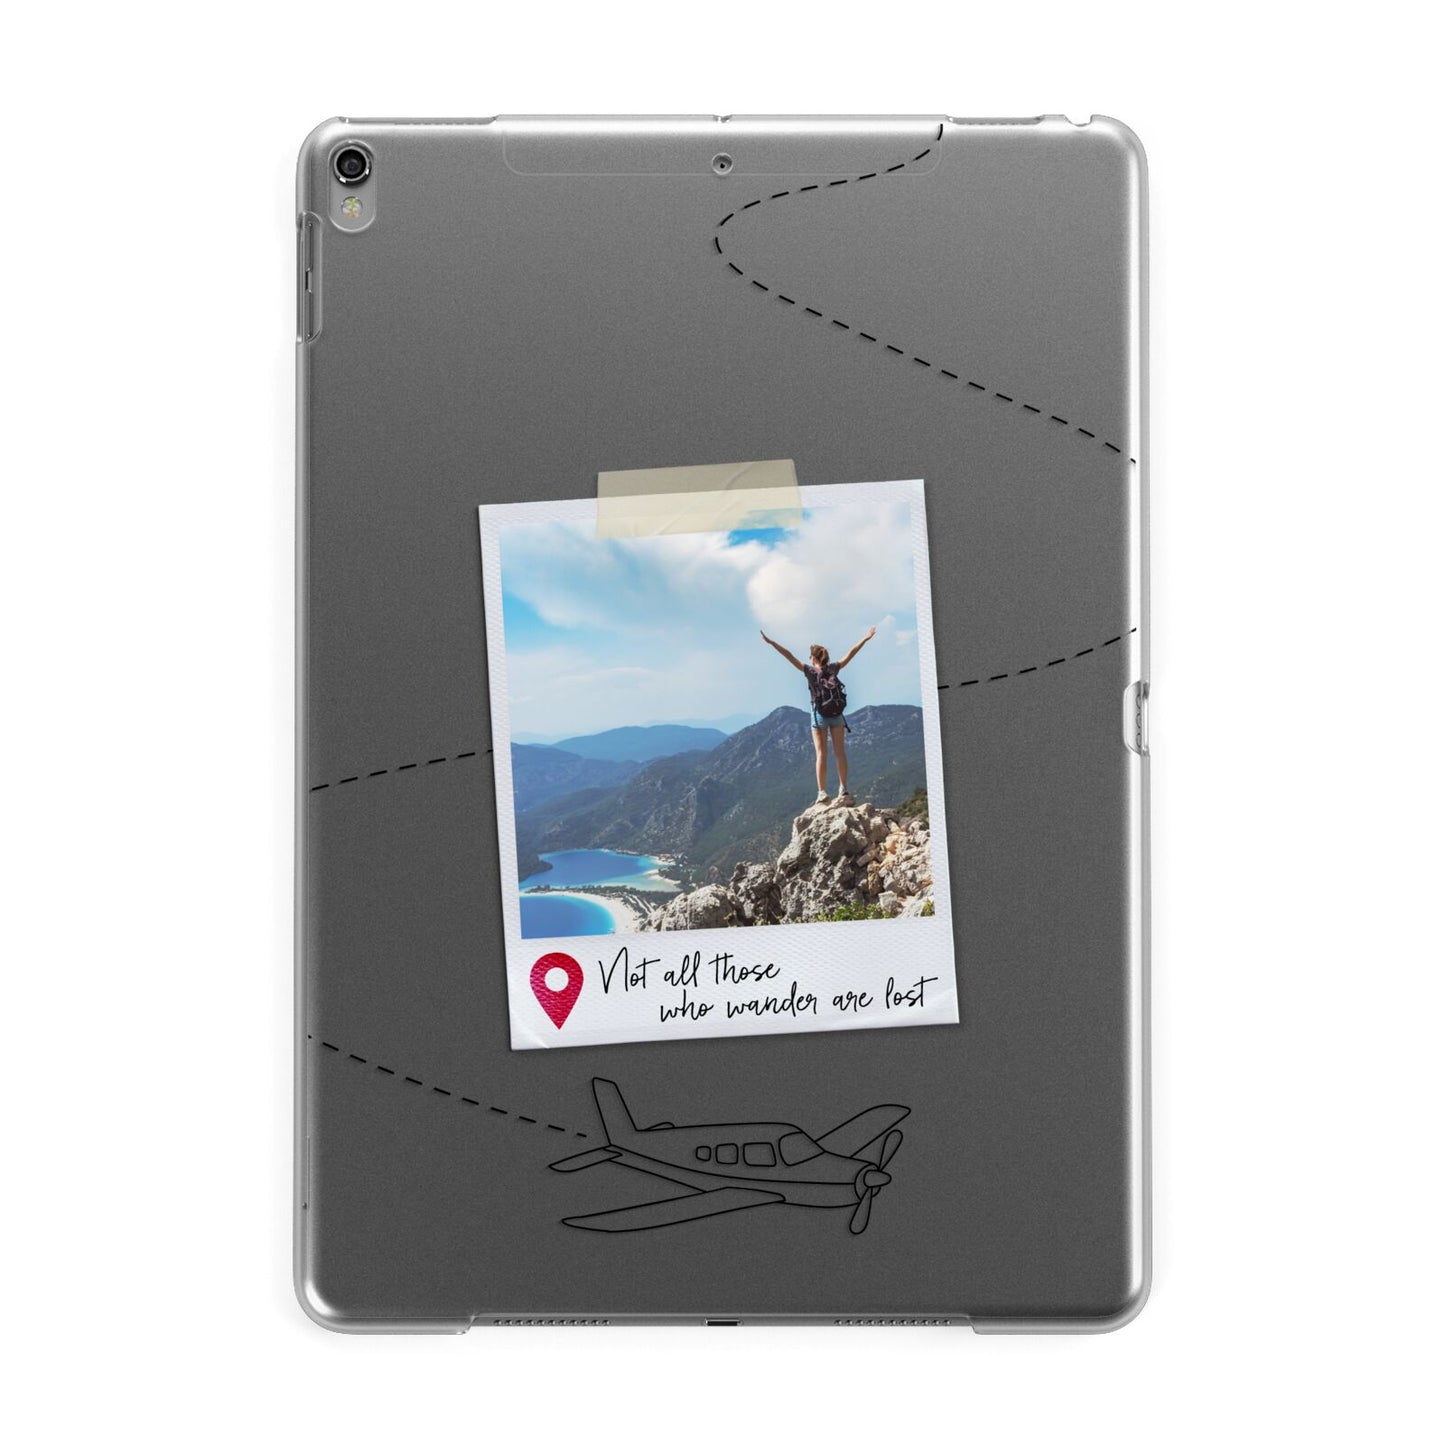 Backpacker Photo Upload Personalised Apple iPad Grey Case